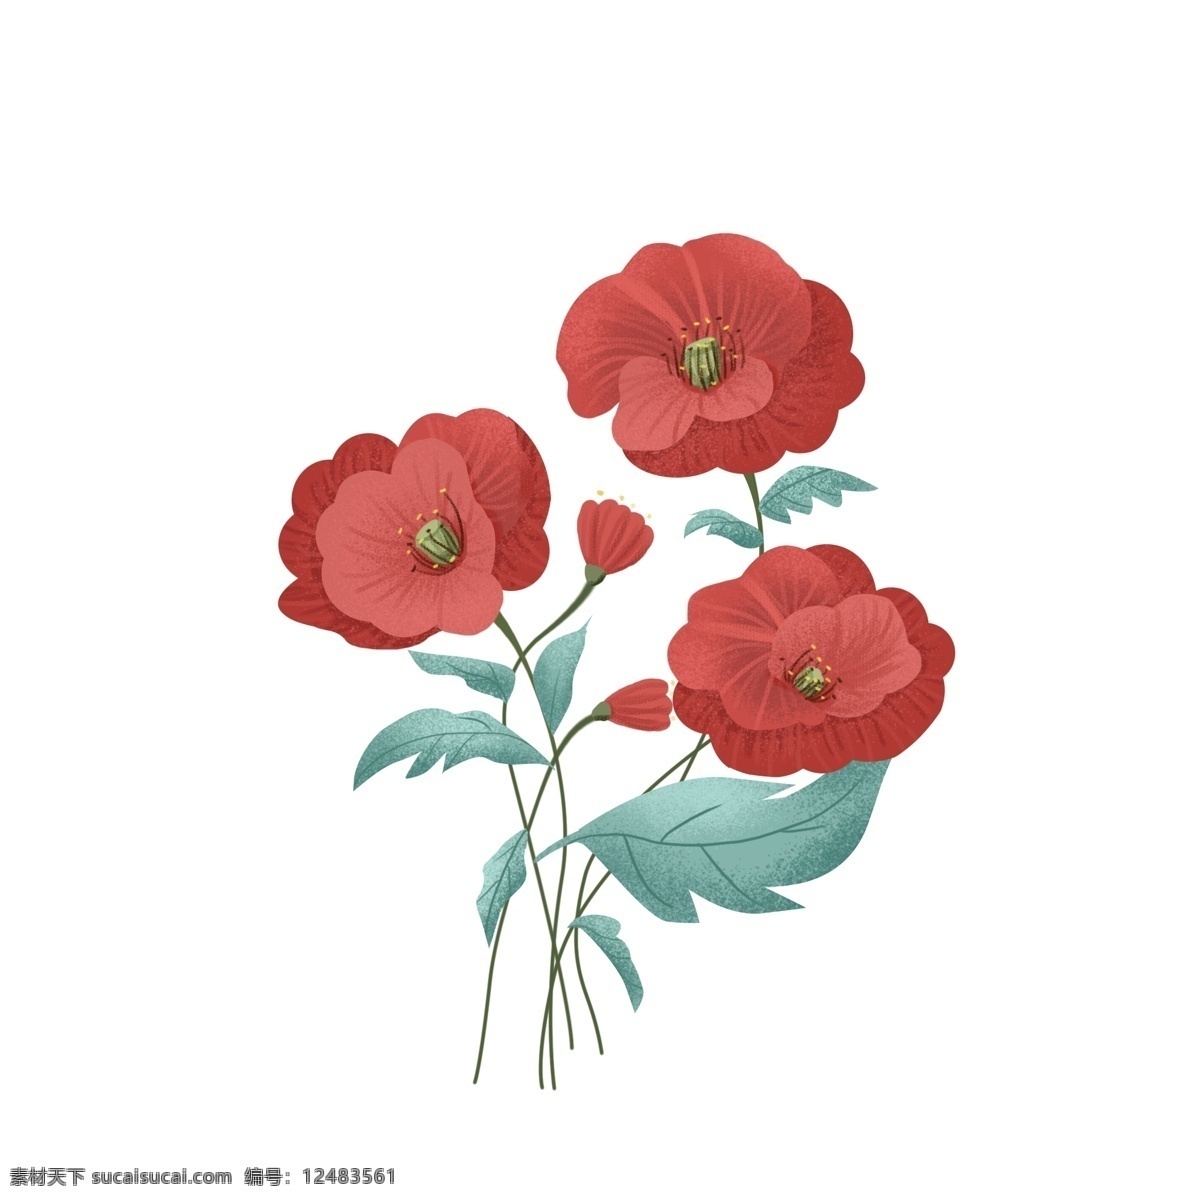 手绘 植物 花朵 叶子 红色 插 画风 元素 手绘植物 小清新 插画风